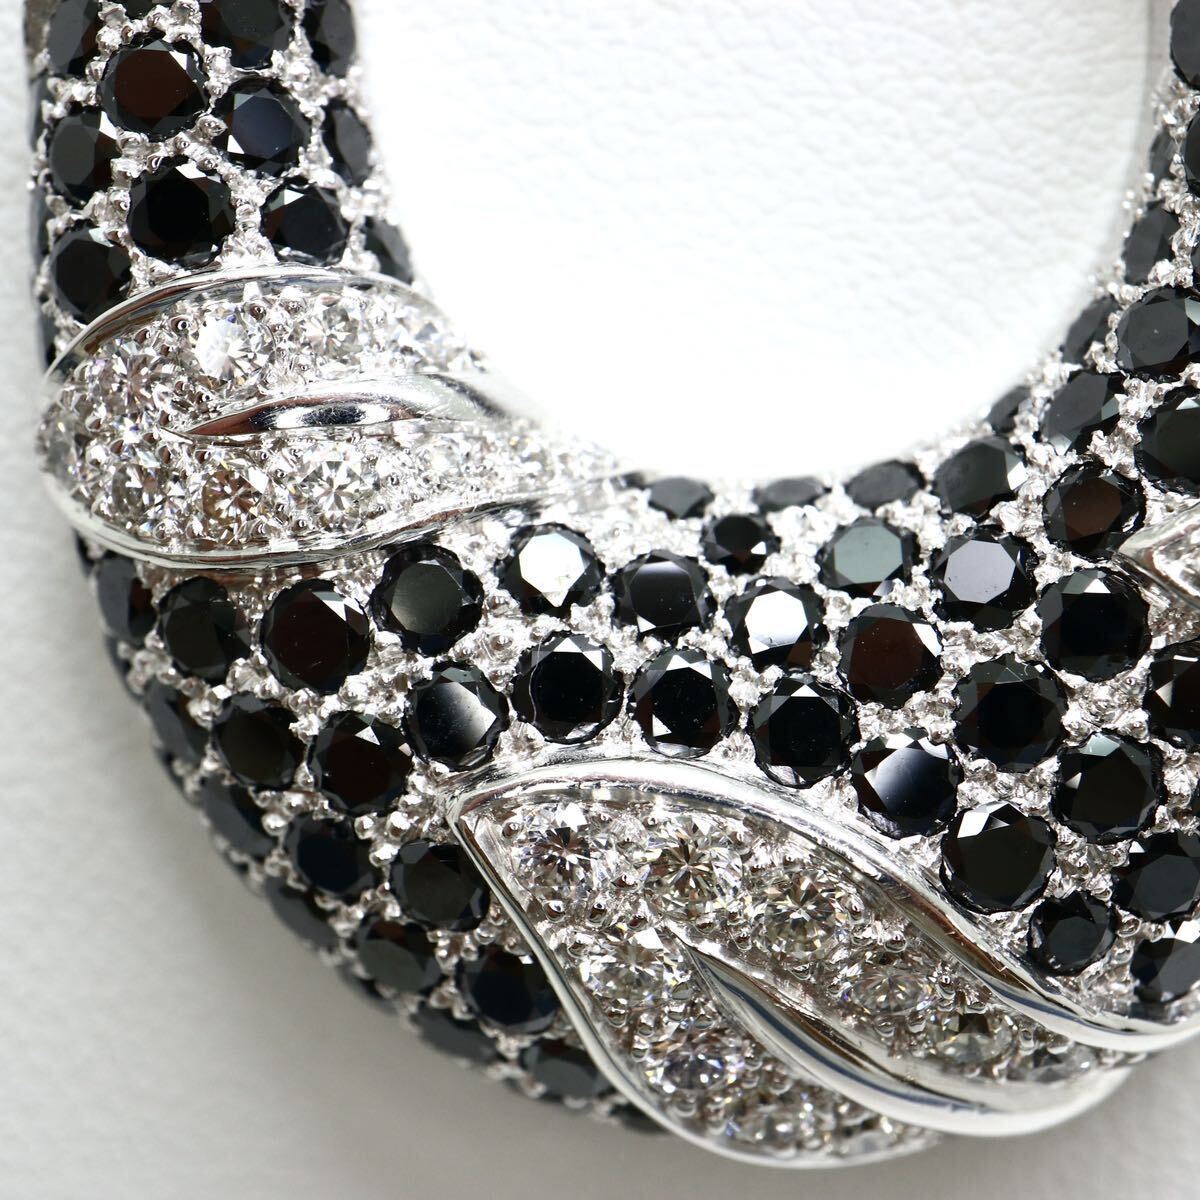 鑑別書付き!!豪華!!《K18WG 天然ブラックダイヤモンド/天然ダイヤモンドネックレス》M 29.3g 約69cm diamond jewelry necklace FA8/FB7_画像4